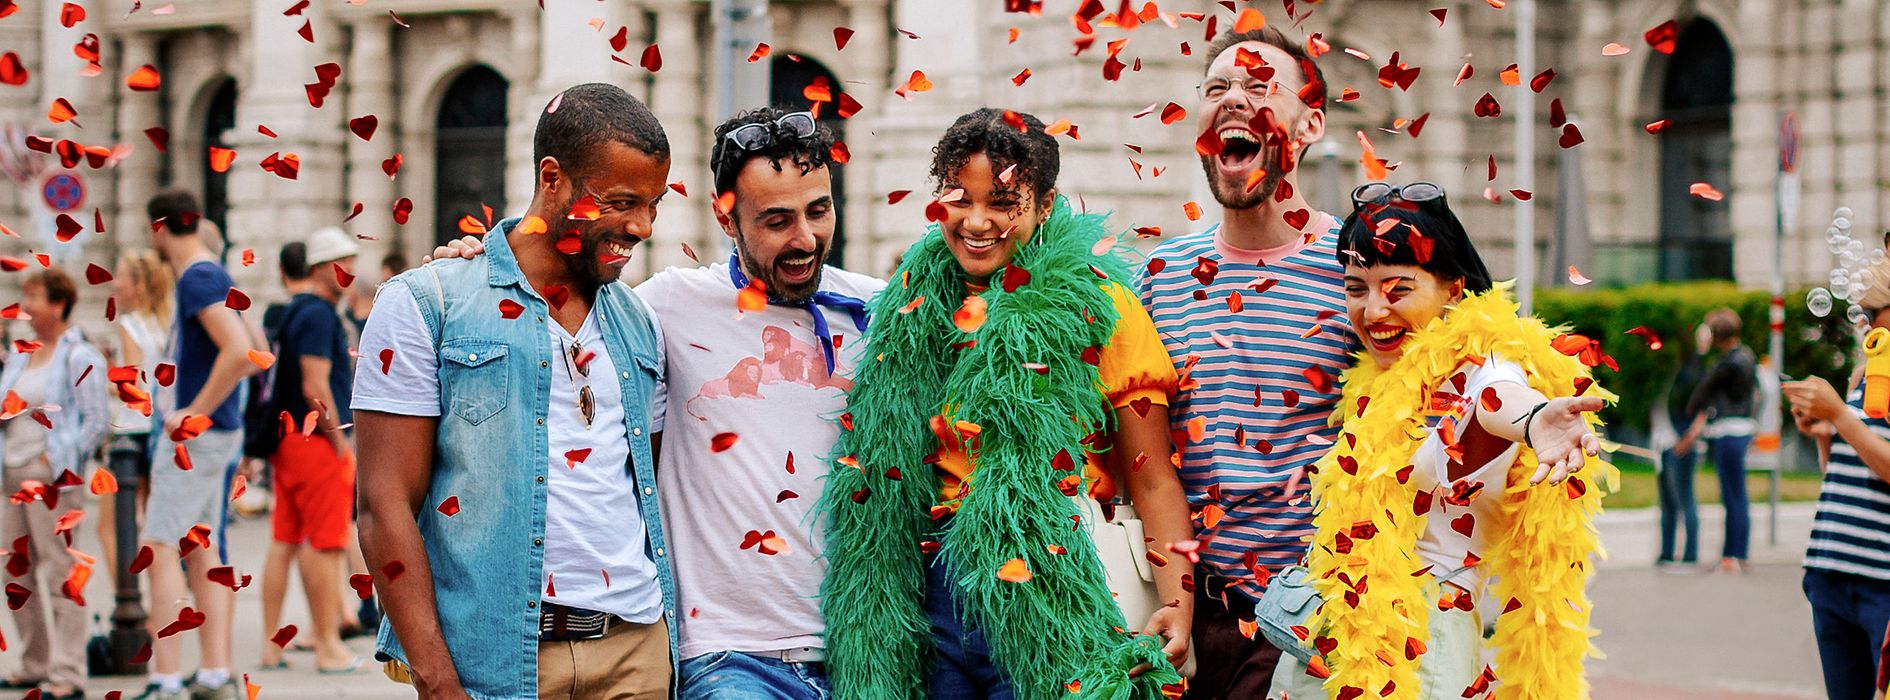 Schwule und lesbische Freunde auf der Regenbogenparade vor dem Burgtheater